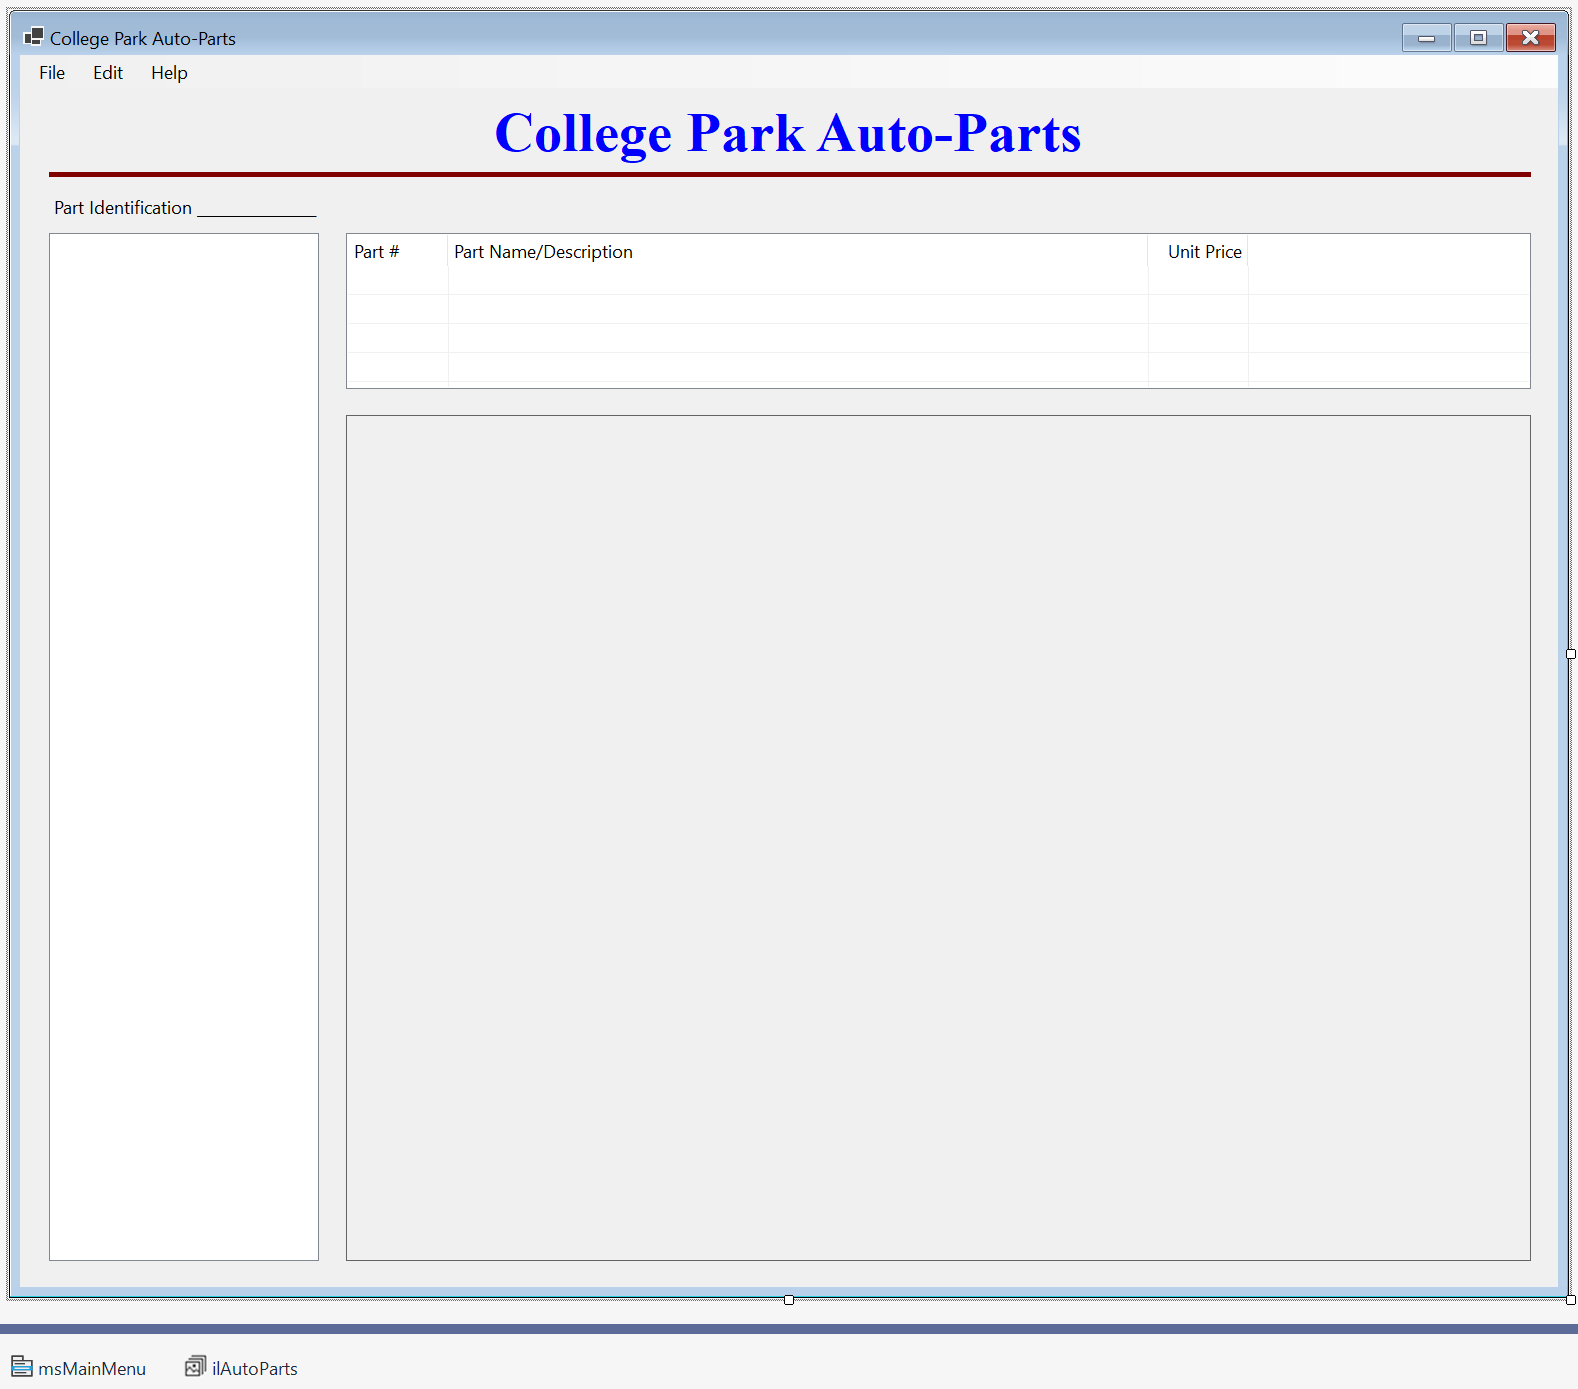 College Park Auto-Parts - Parts Inventory